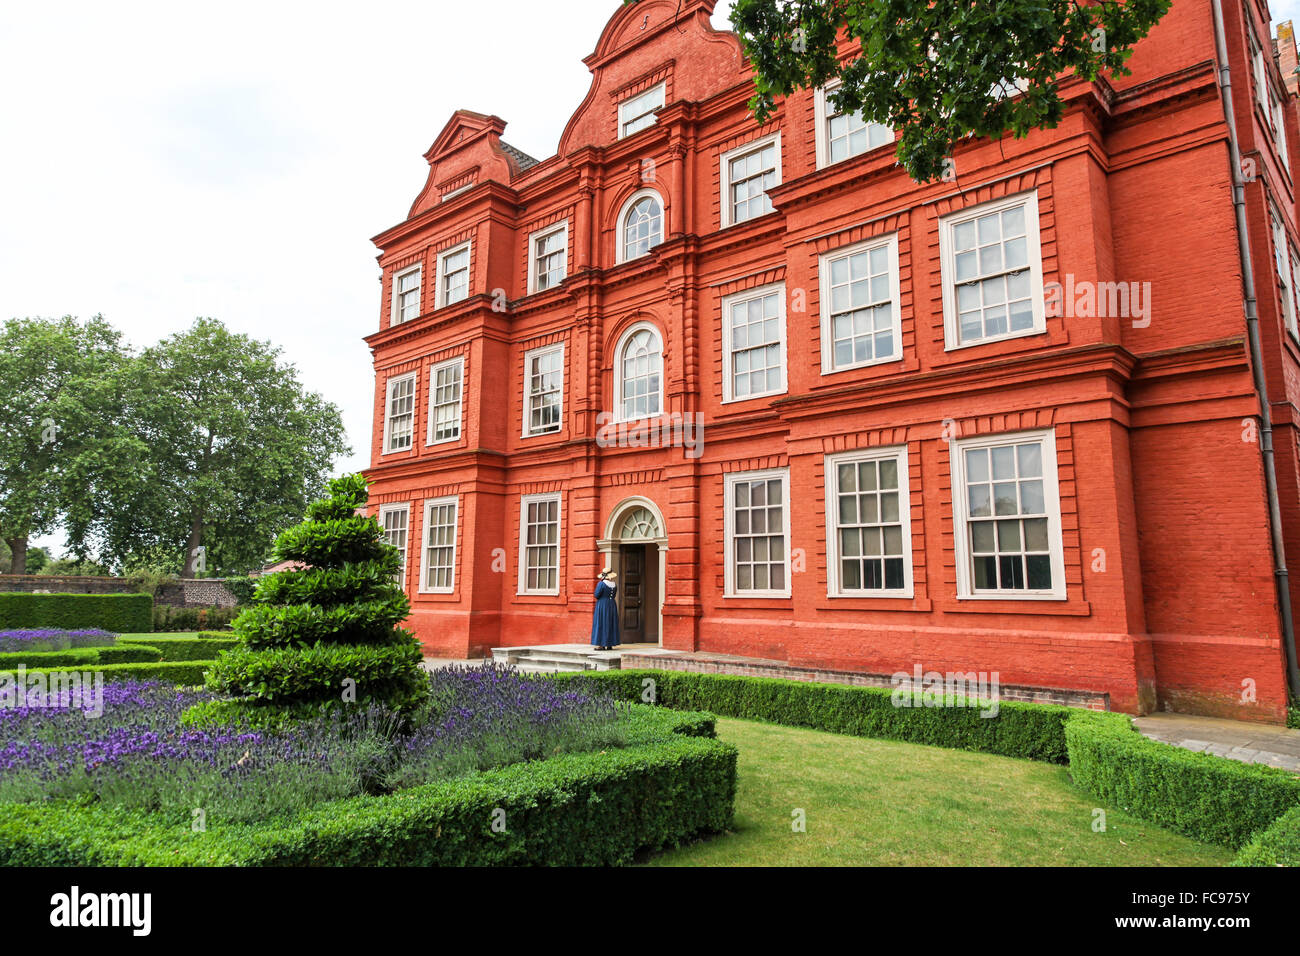 Kew Palace dans les jardins botaniques royaux de Kew Gardens London England UK Banque D'Images